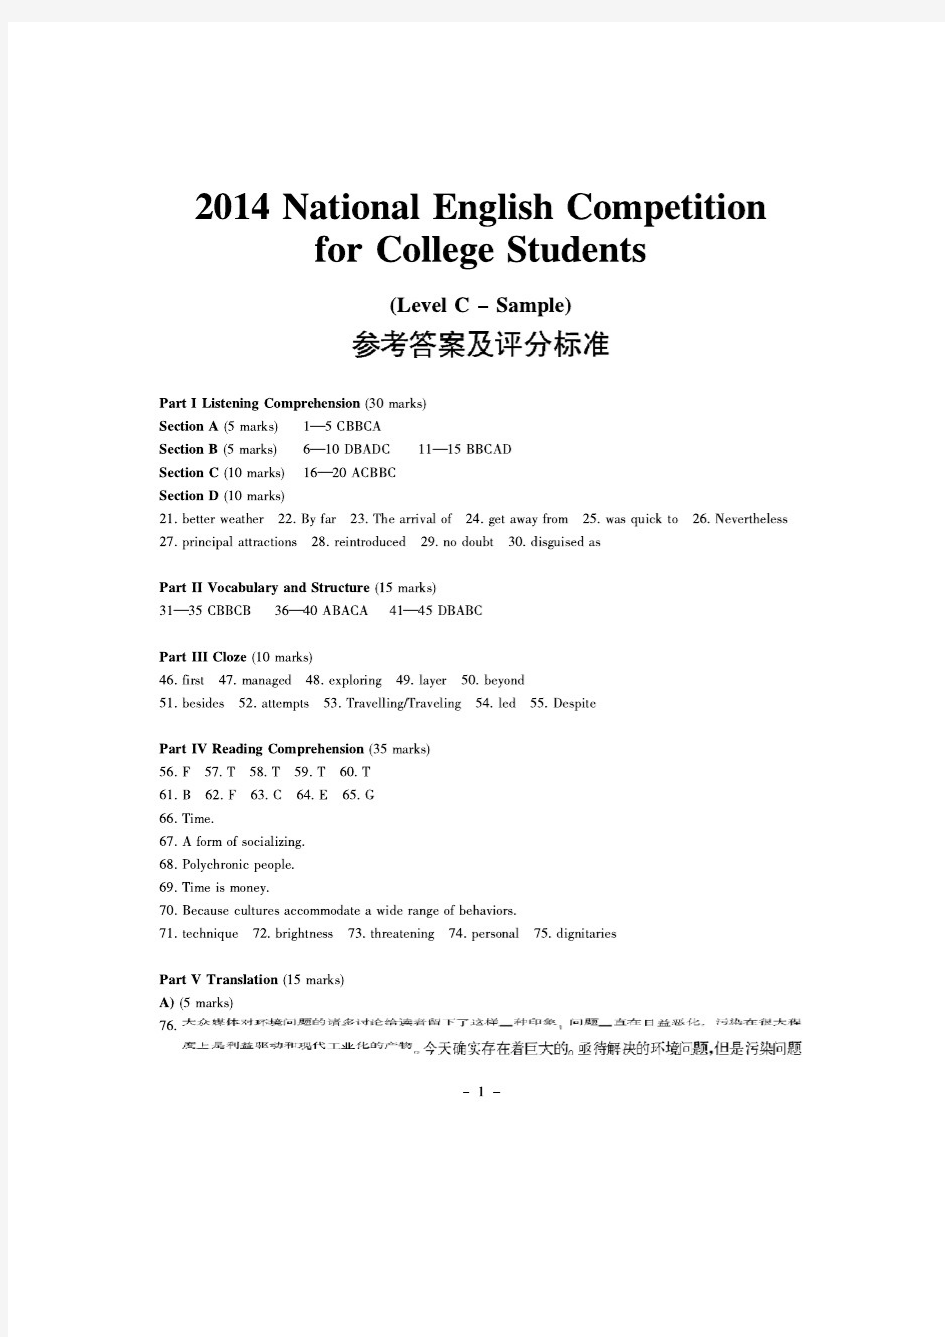 2014年全国大学生英语竞赛初赛(C类)详细答案及听力原文